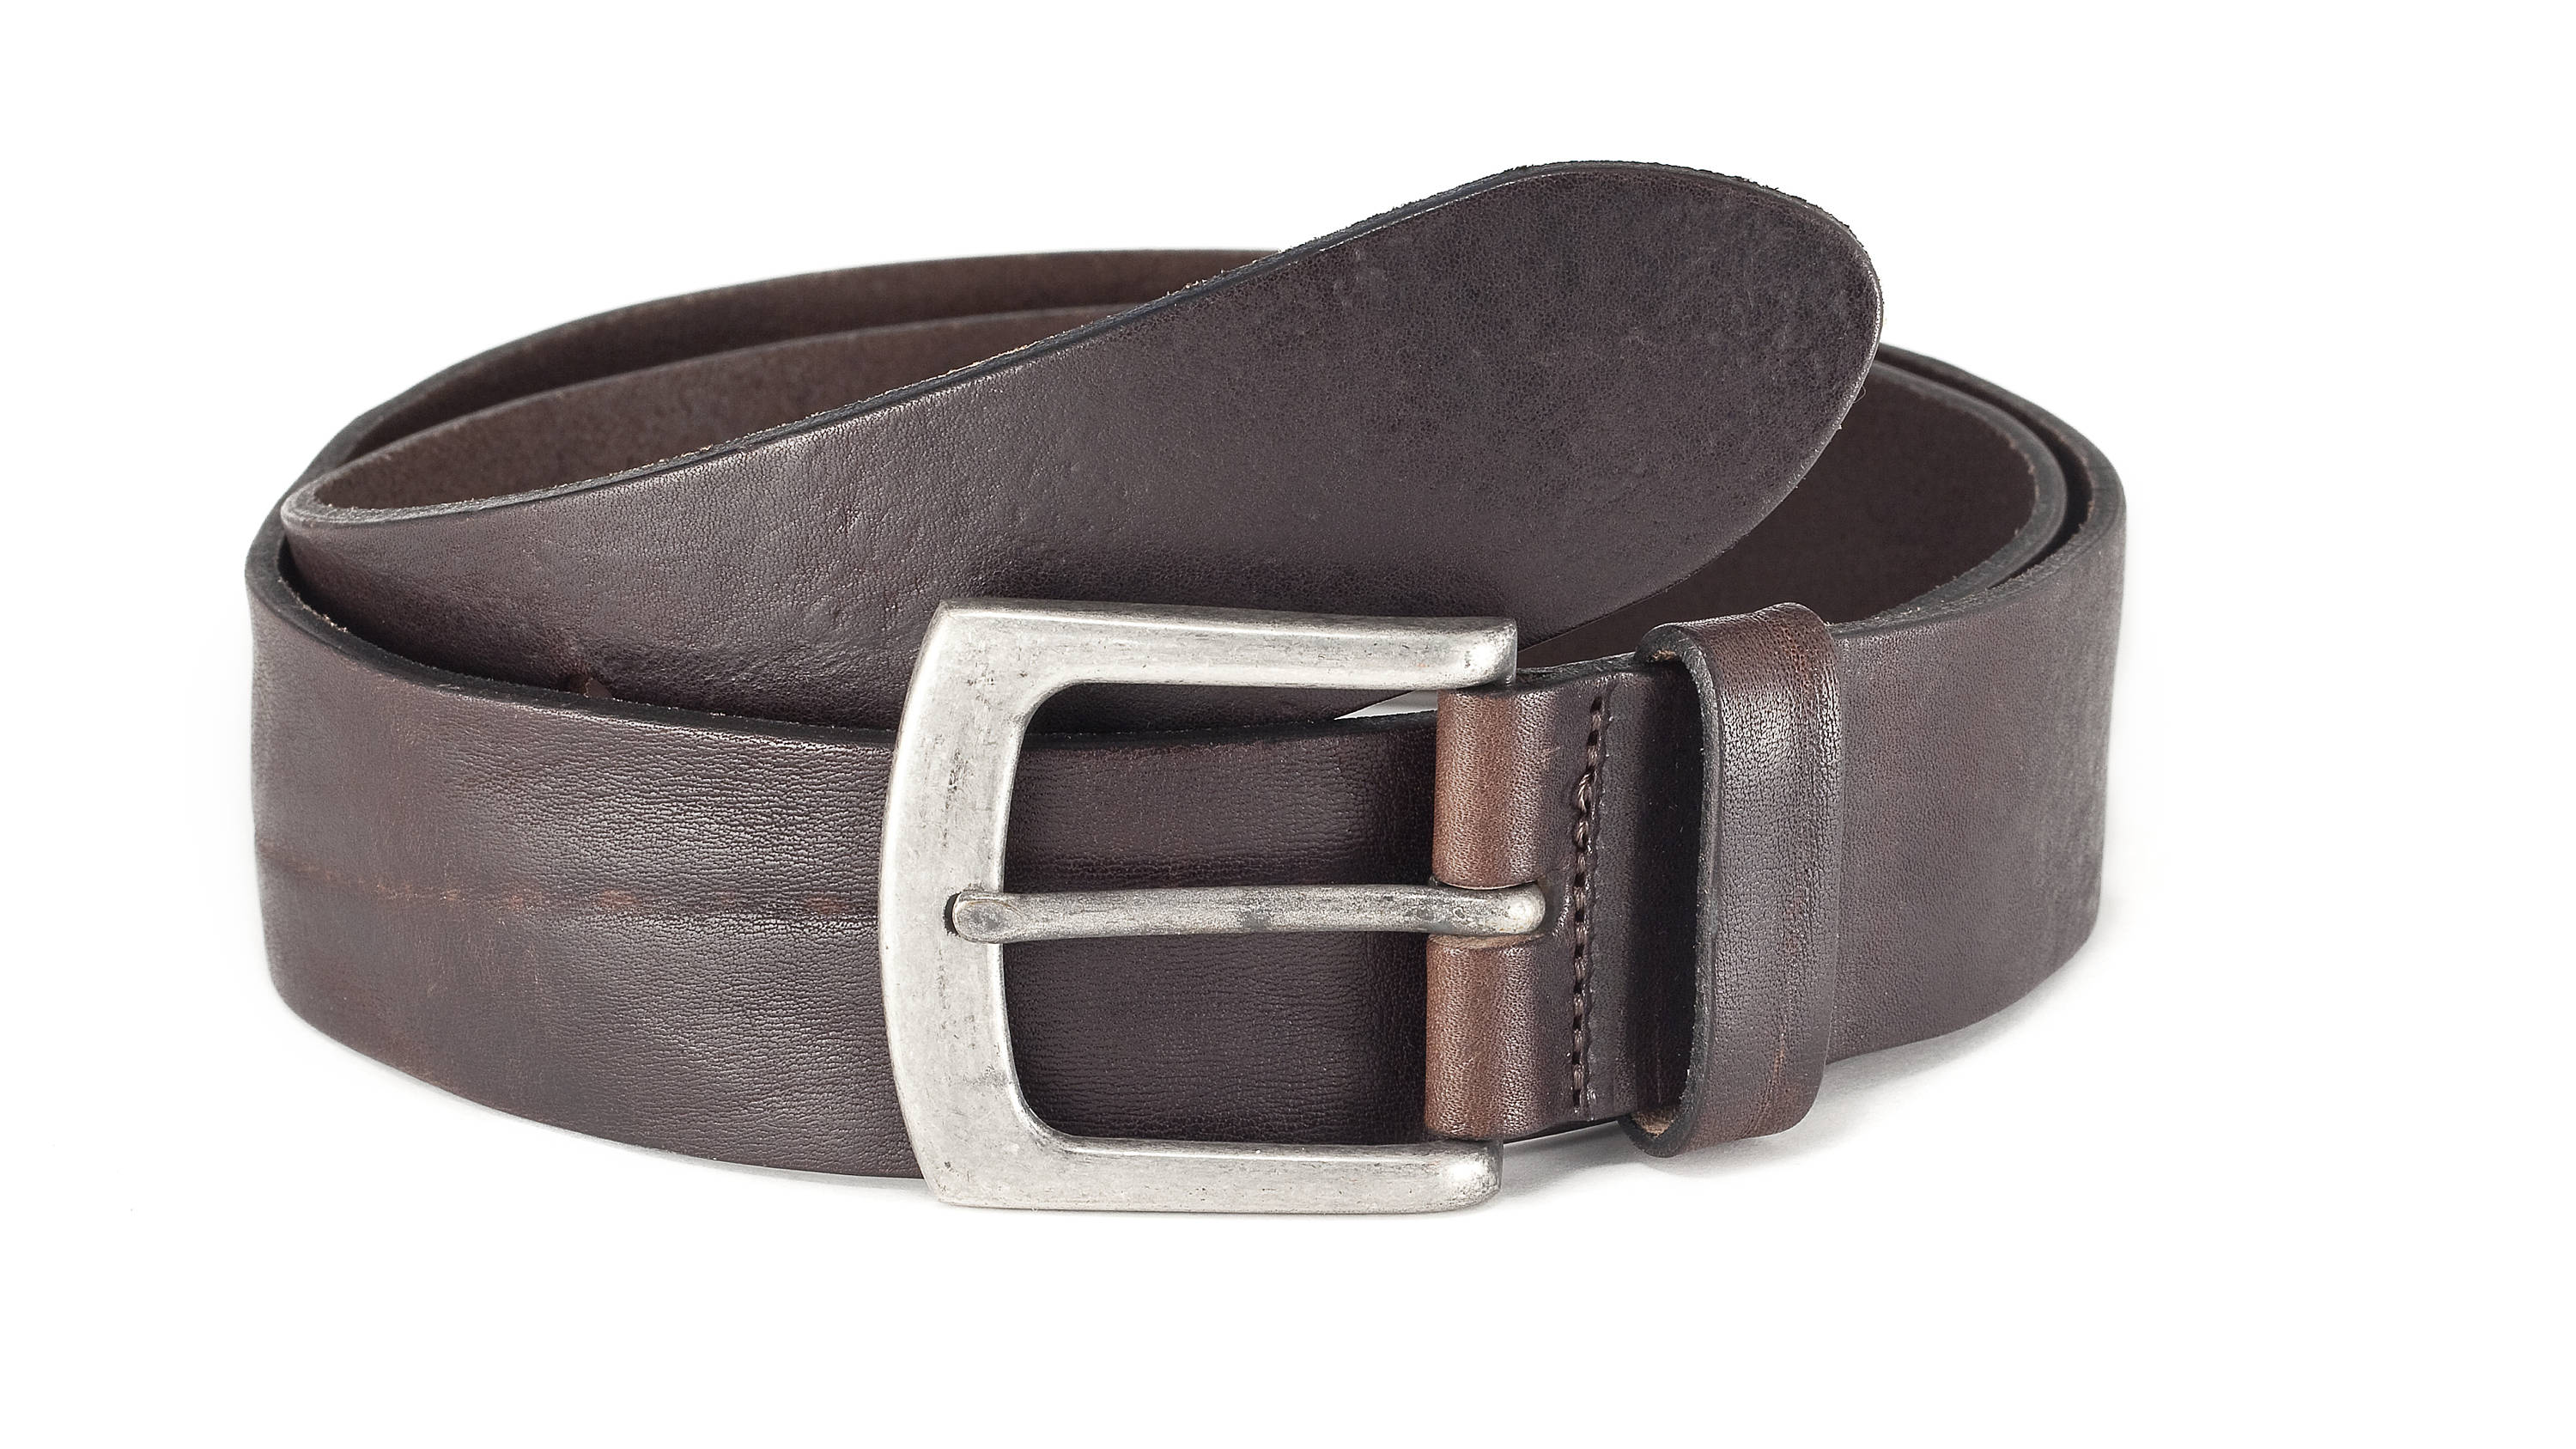 Leather belt dark brown vintage jeans belt men fullgrain | Etsy